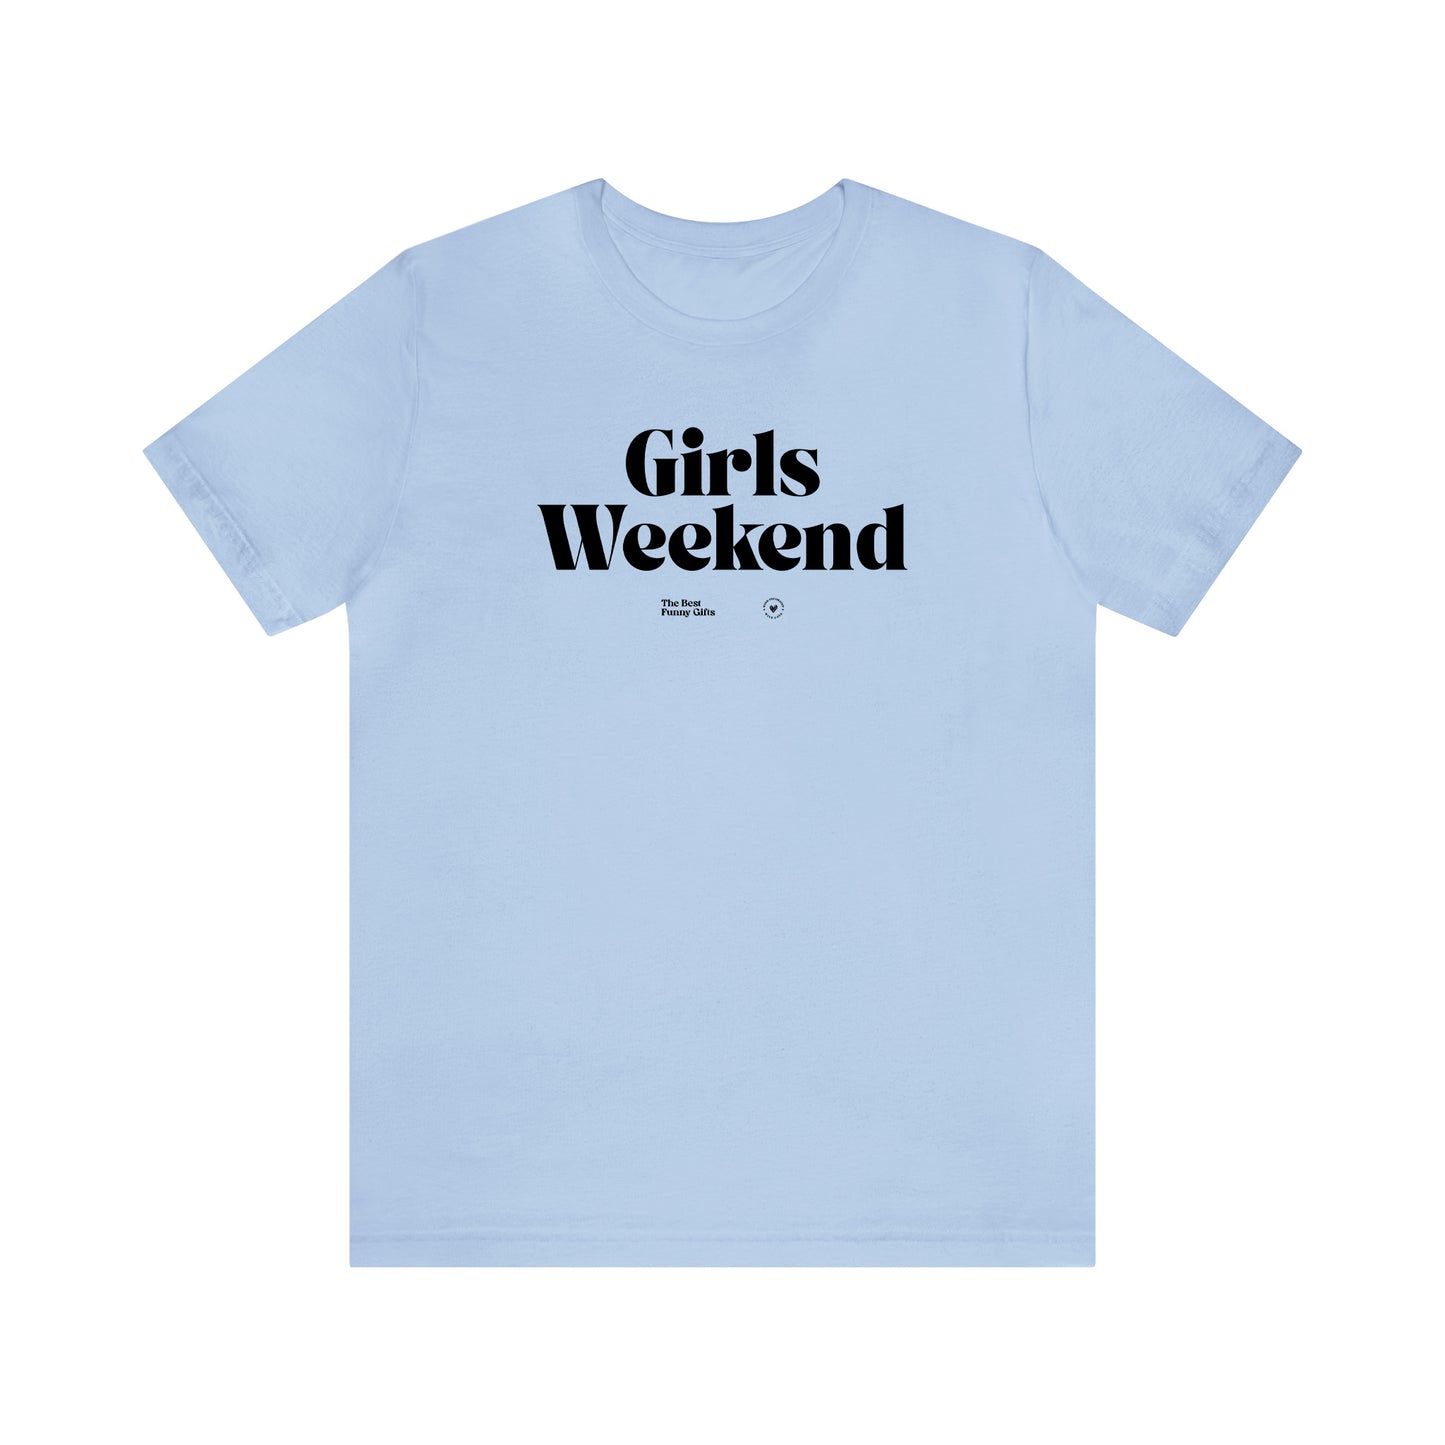 Funny Shirts for Women - Girls Weekend - Women’s T Shirts